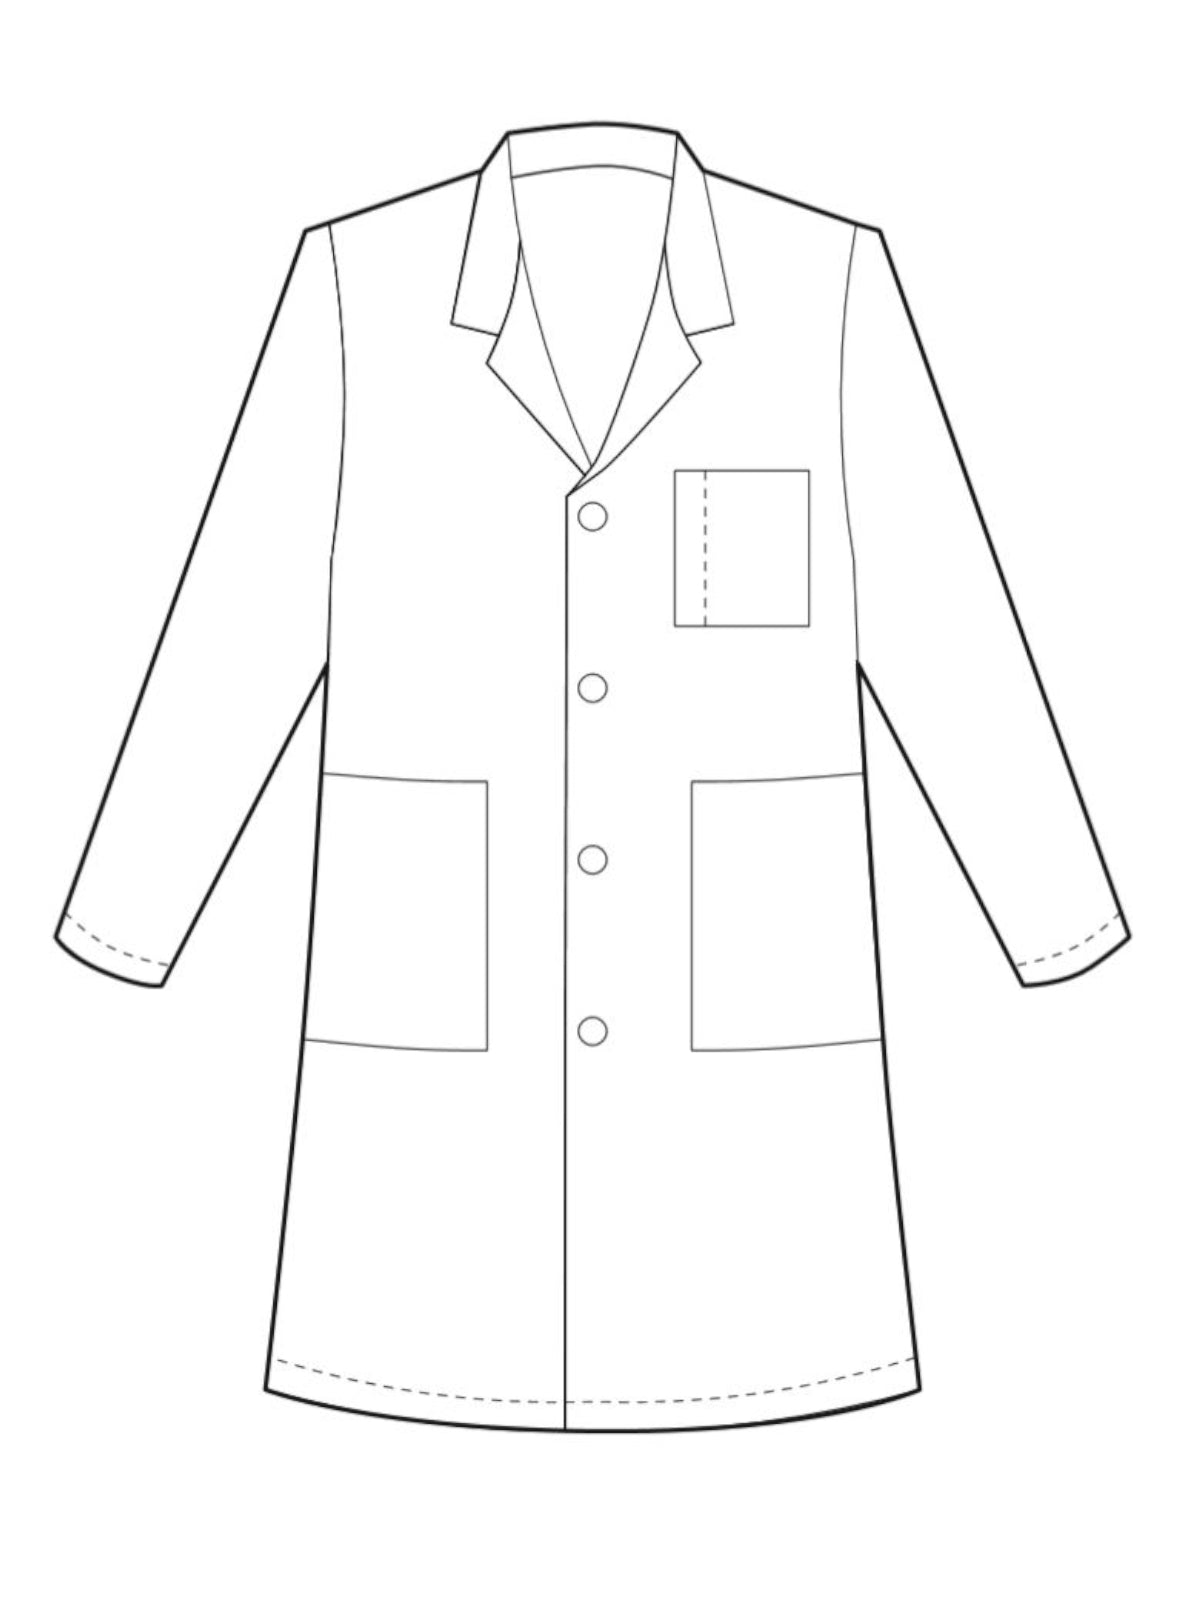 Men's 34" Lab Coat - 15007 - White